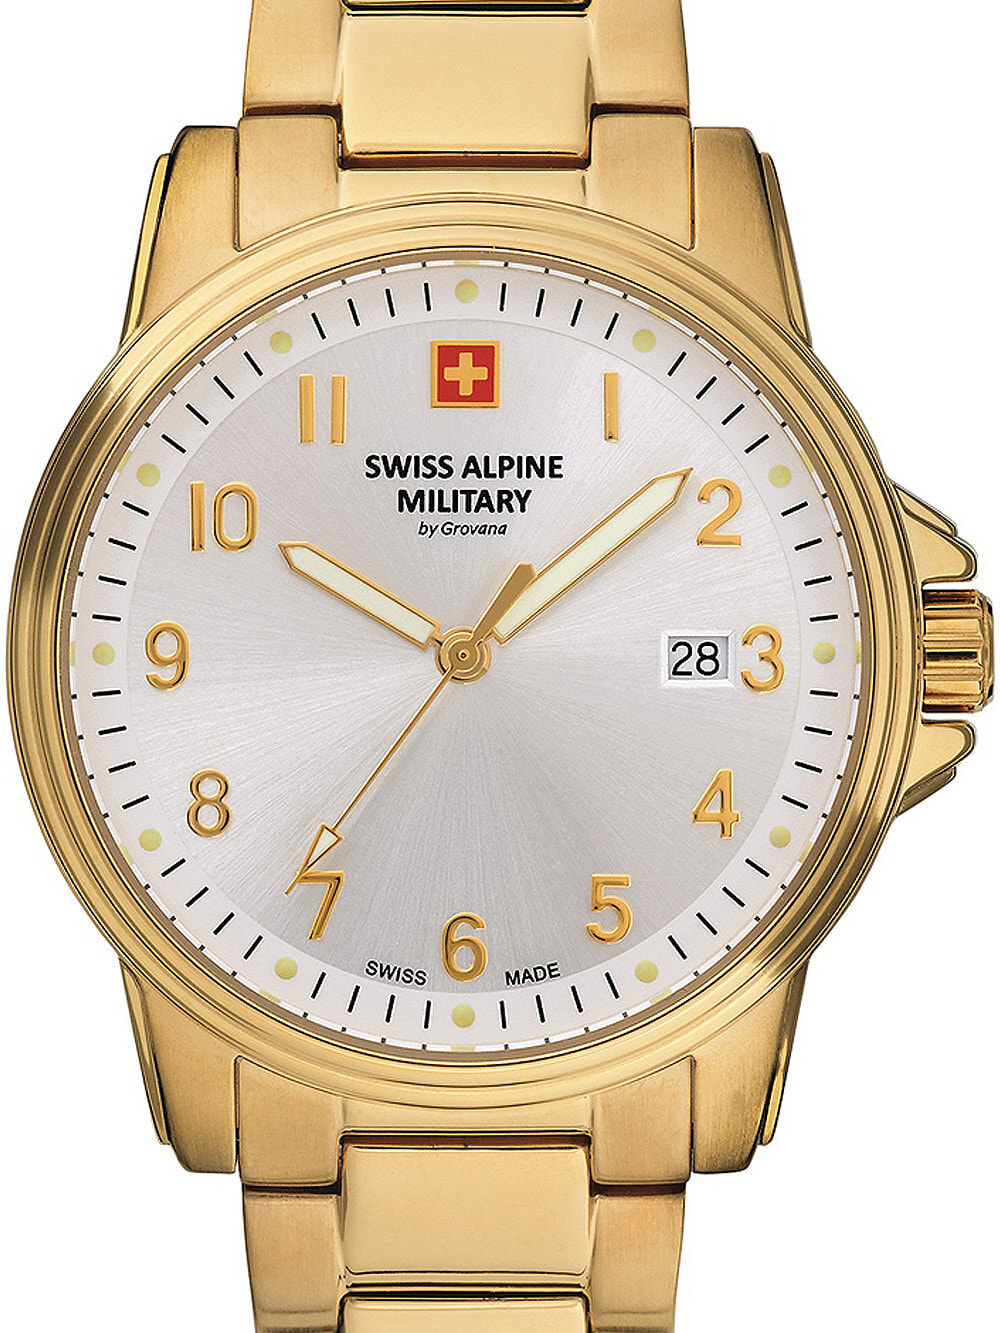 Мужские наручные часы с золотым браслетом Swiss Alpine Military 7011.1112 mens 40mm 10ATM